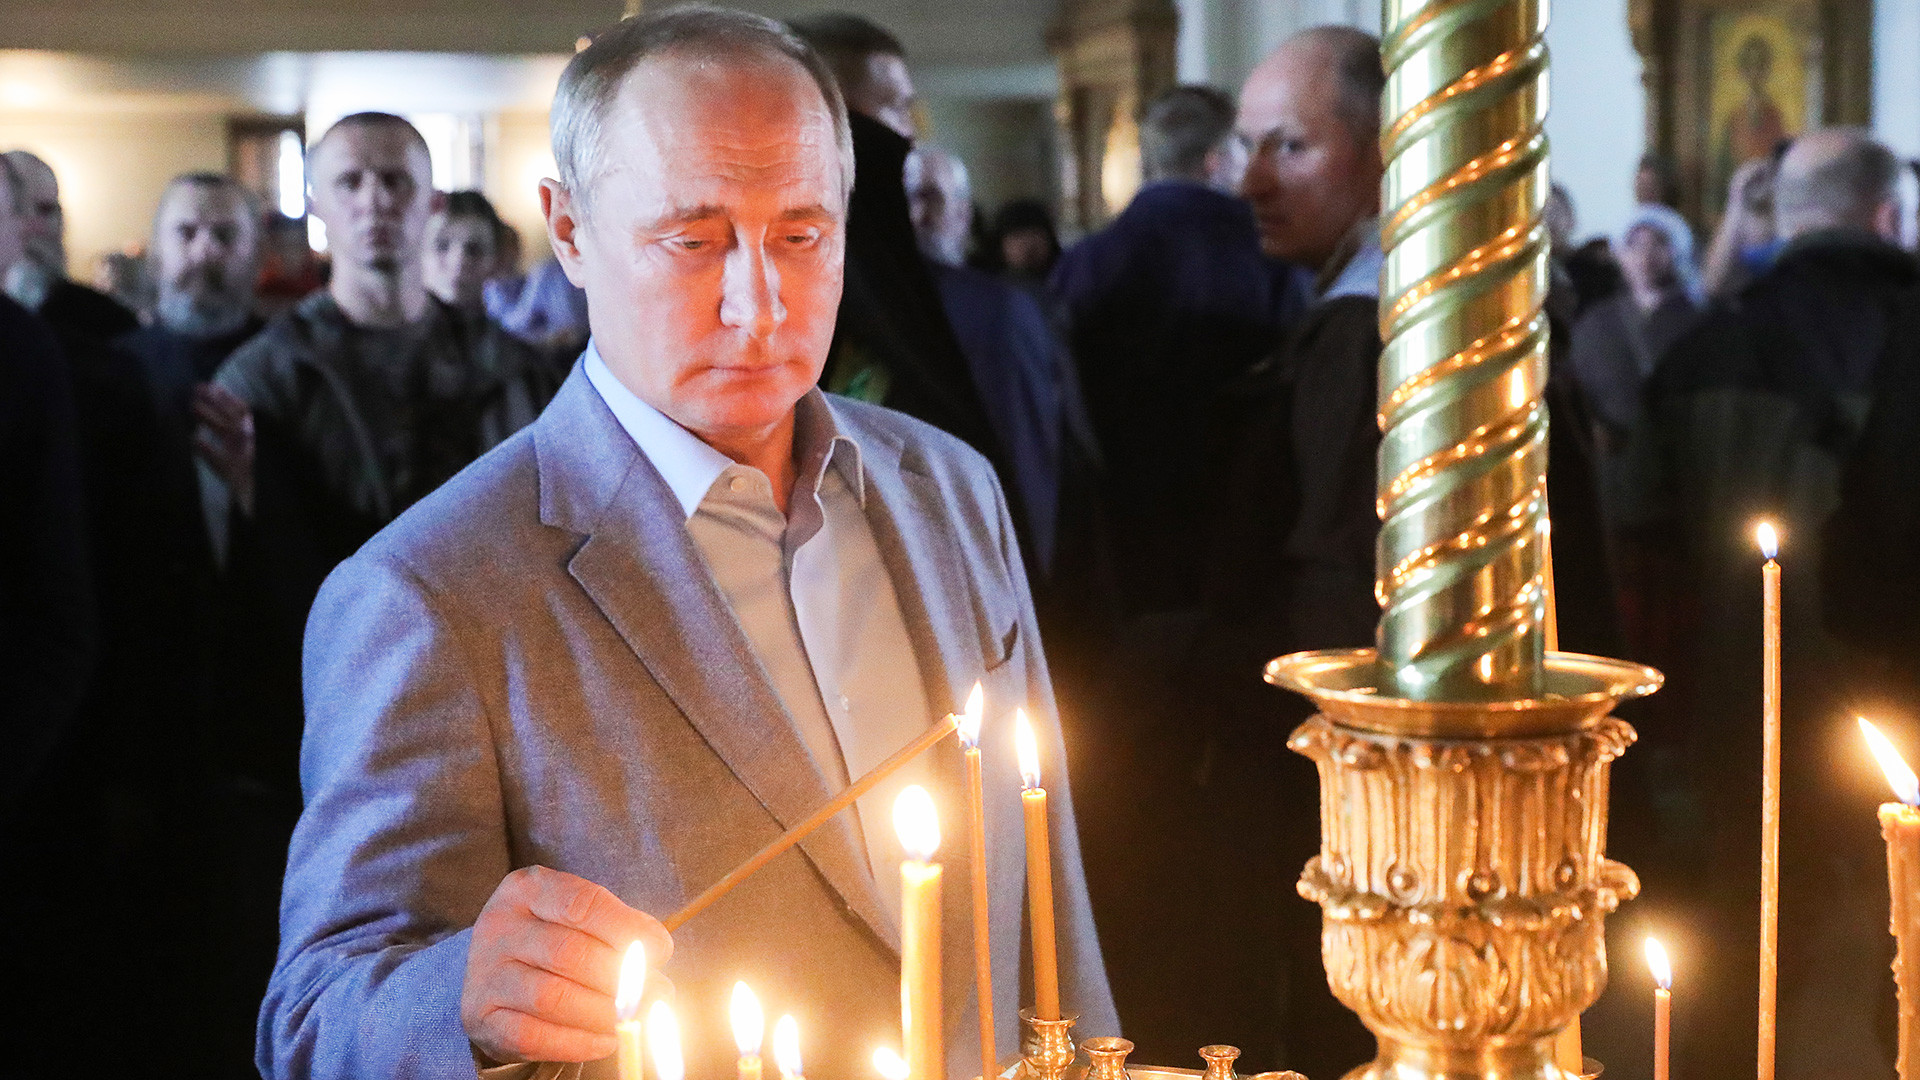 Le président russe Vladimir Poutine allume une bougie lors de sa visite au monastère de Valaam en Carélie (Nord-Ouest de la Russie), 2019